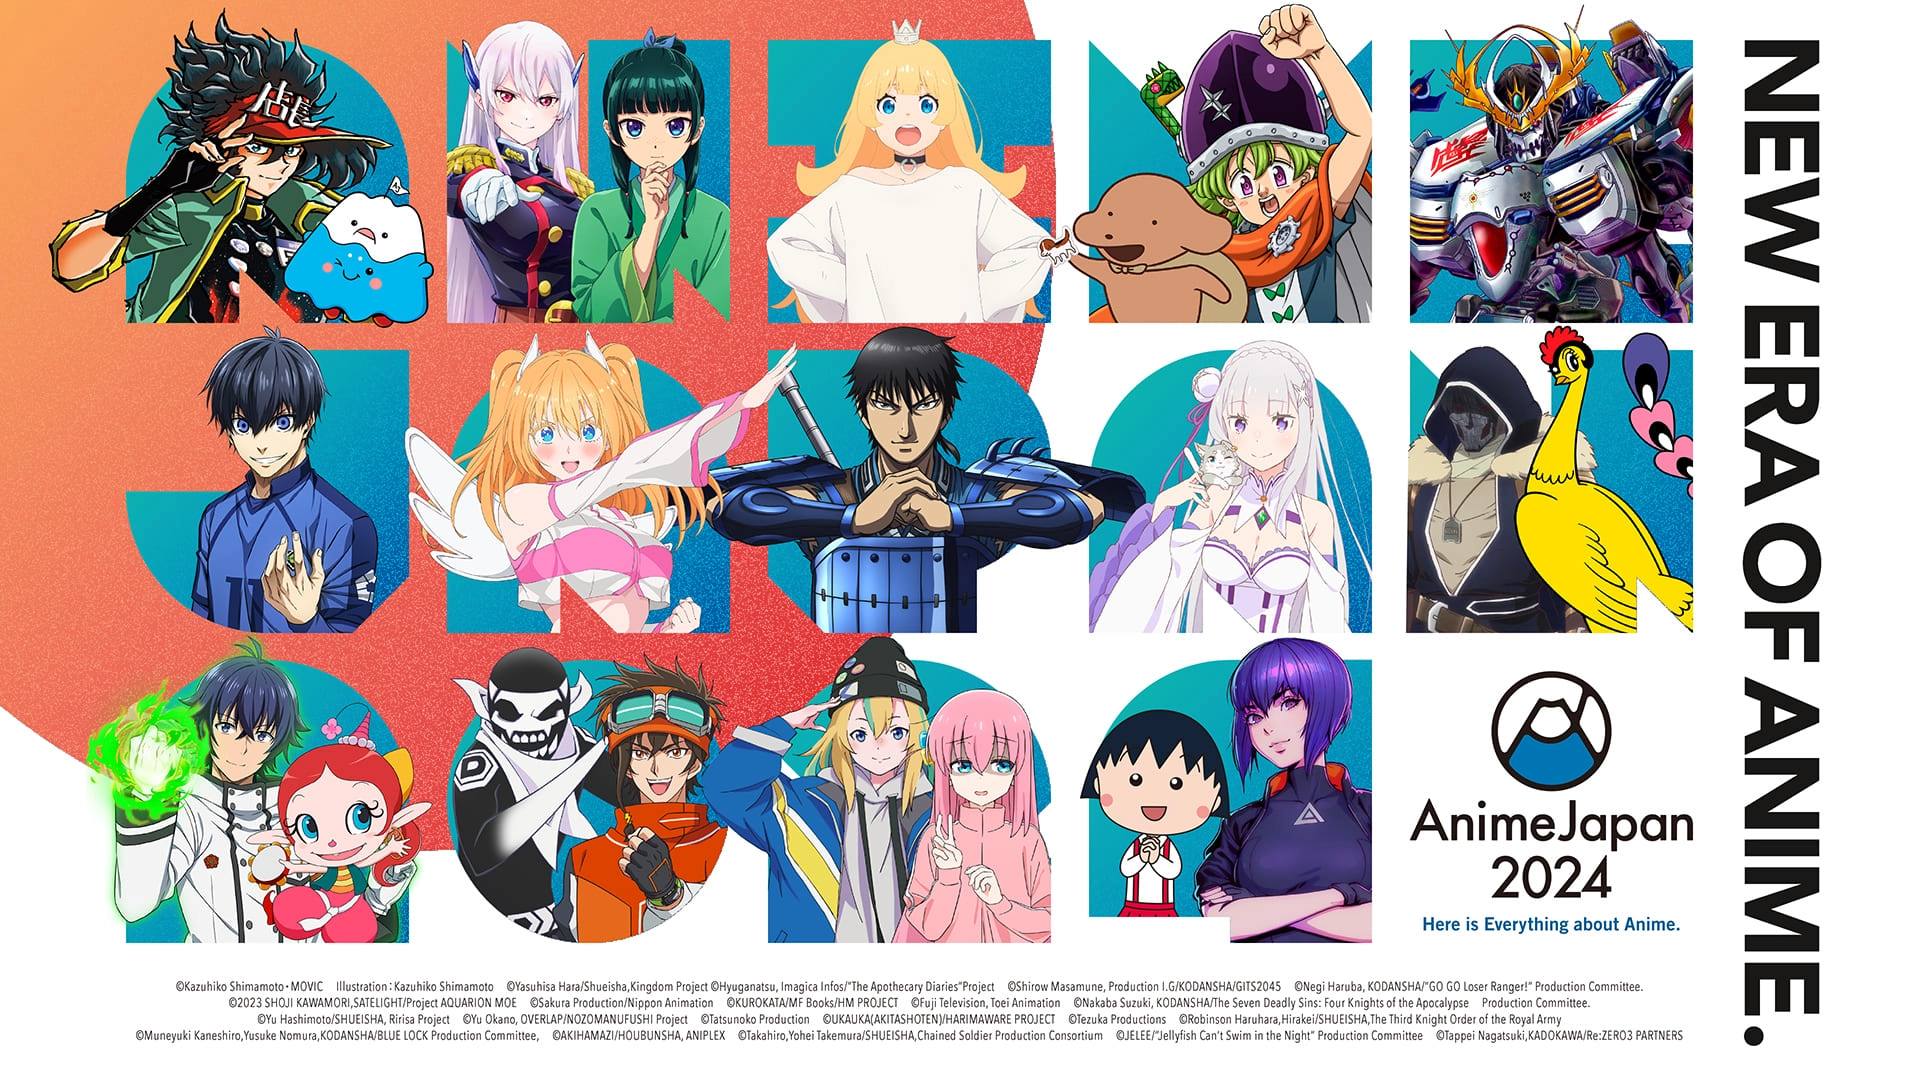 El popular evento AnimeJapan revela su line-up de anuncios en su edición 2024